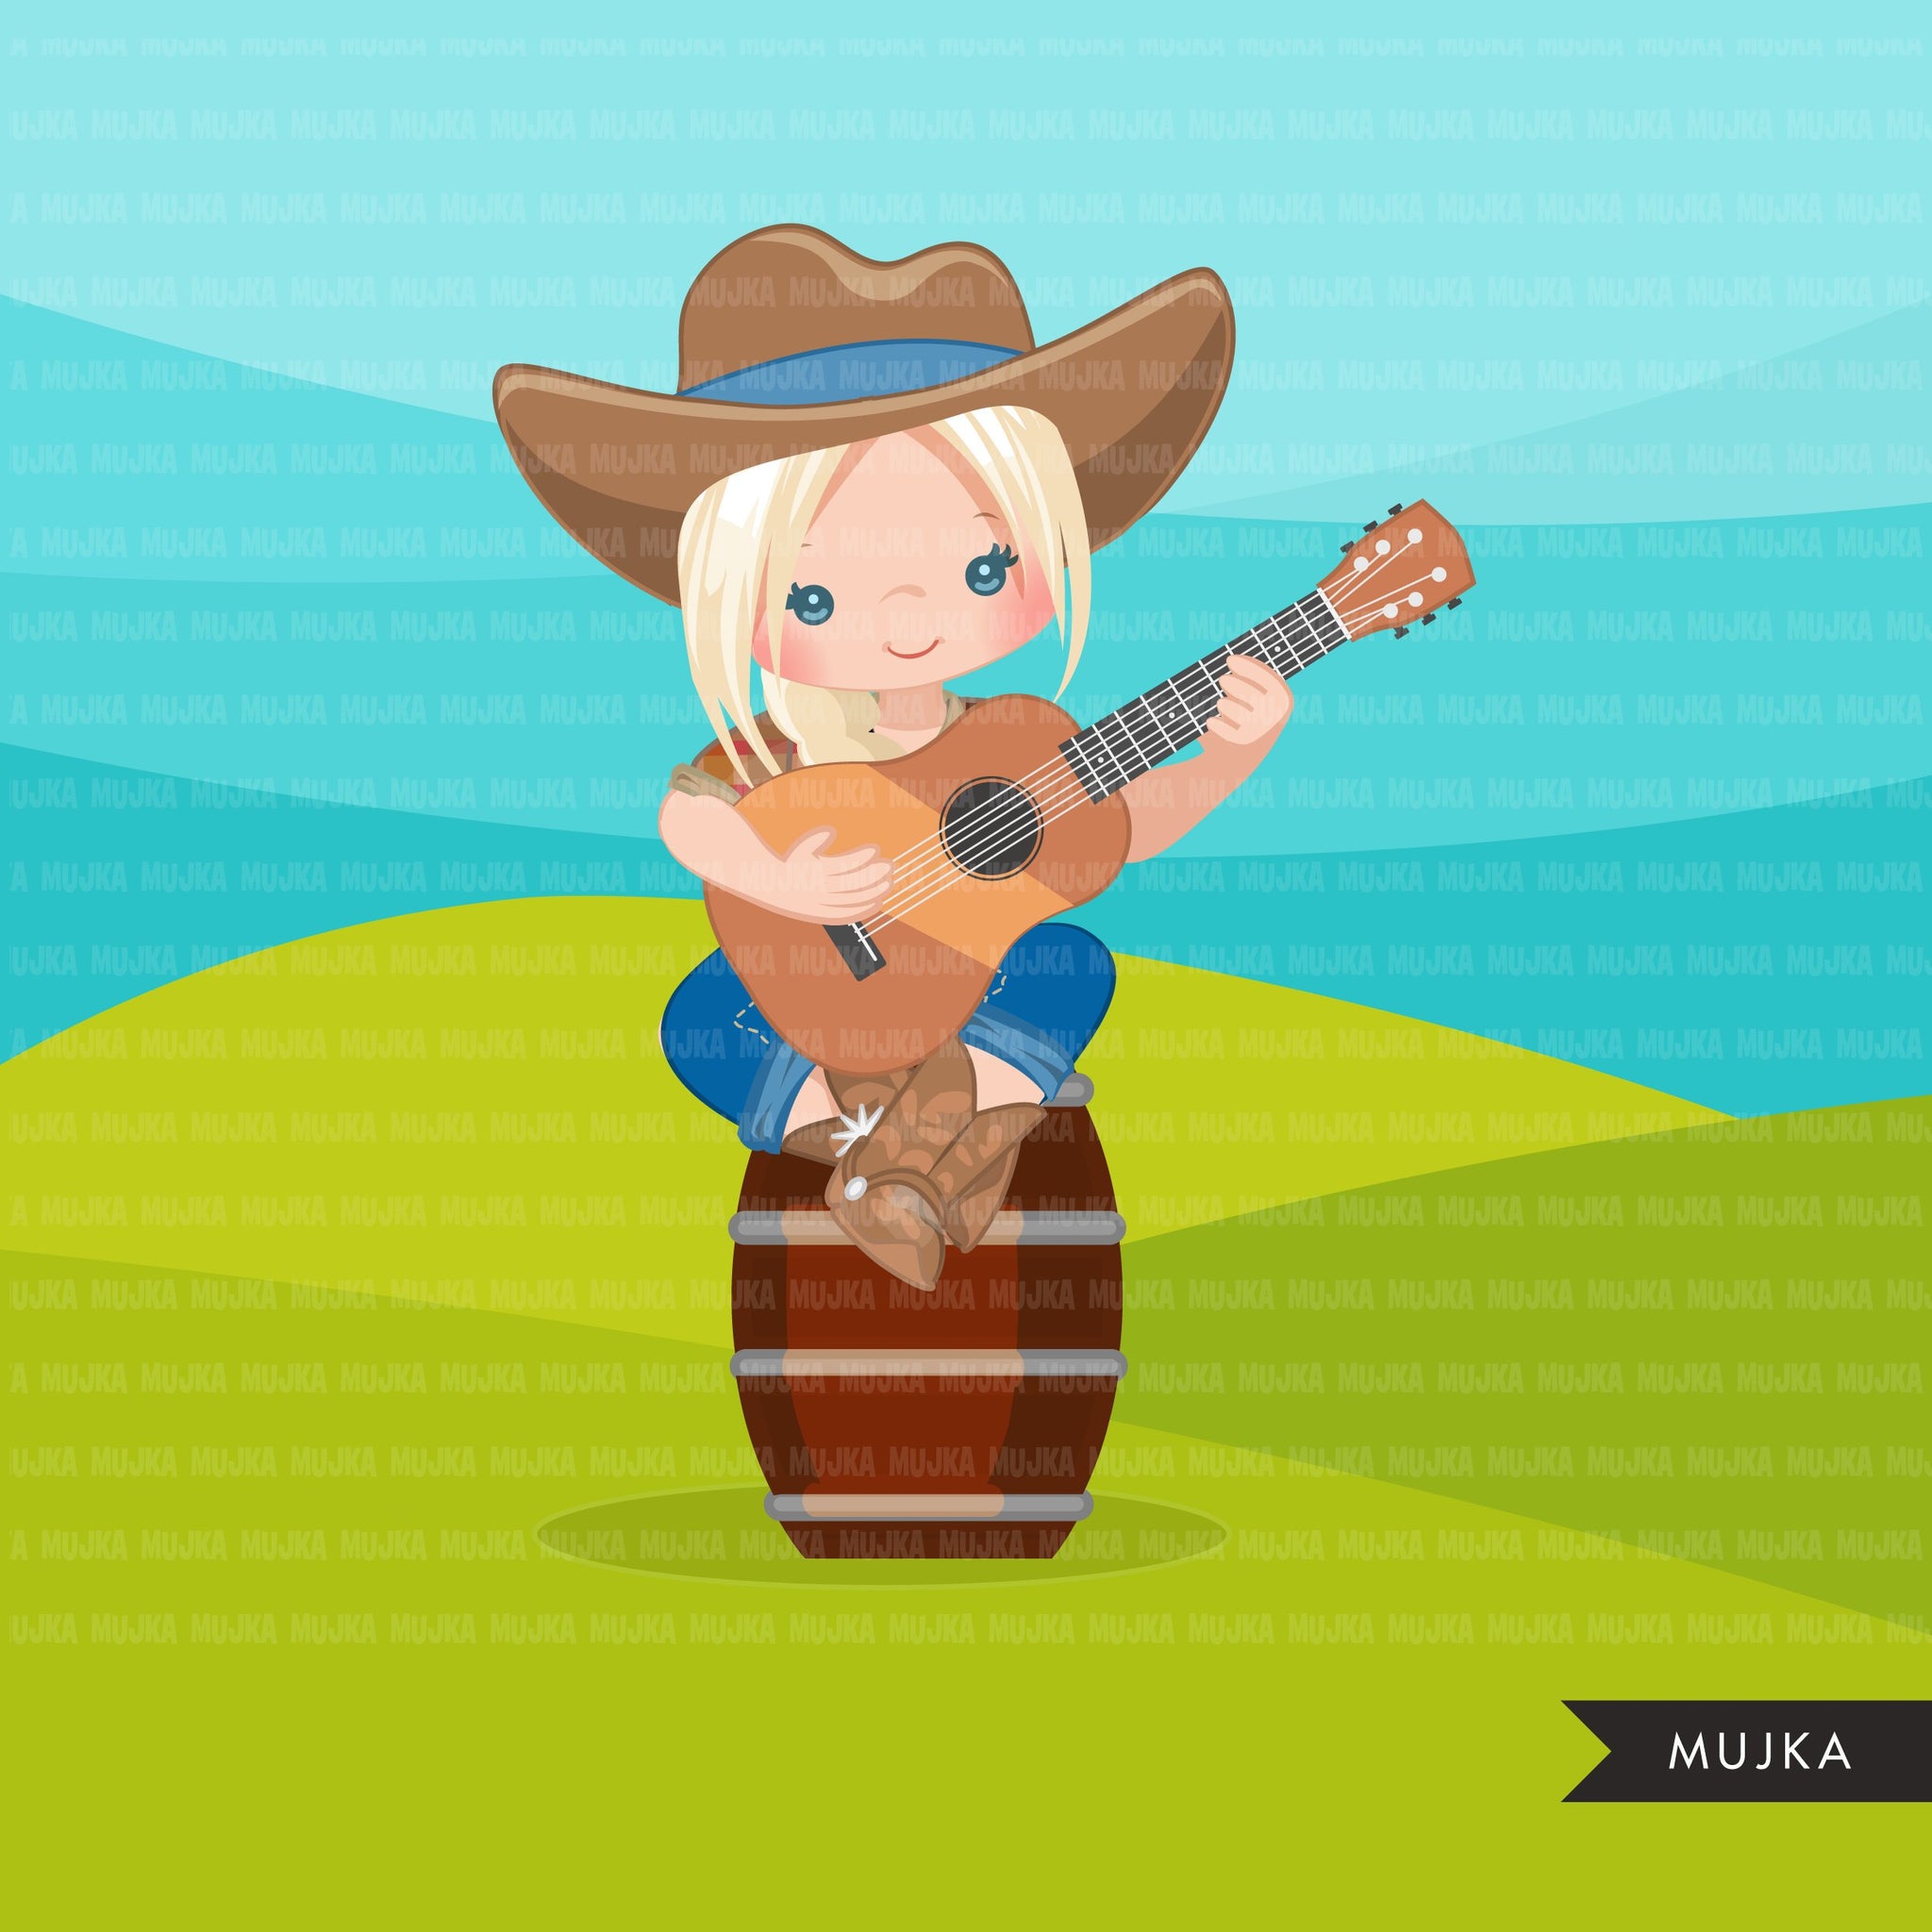 Cowgirl com clipart de guitarra, personagens de fazendeiros gráficos de fazenda rural, outono